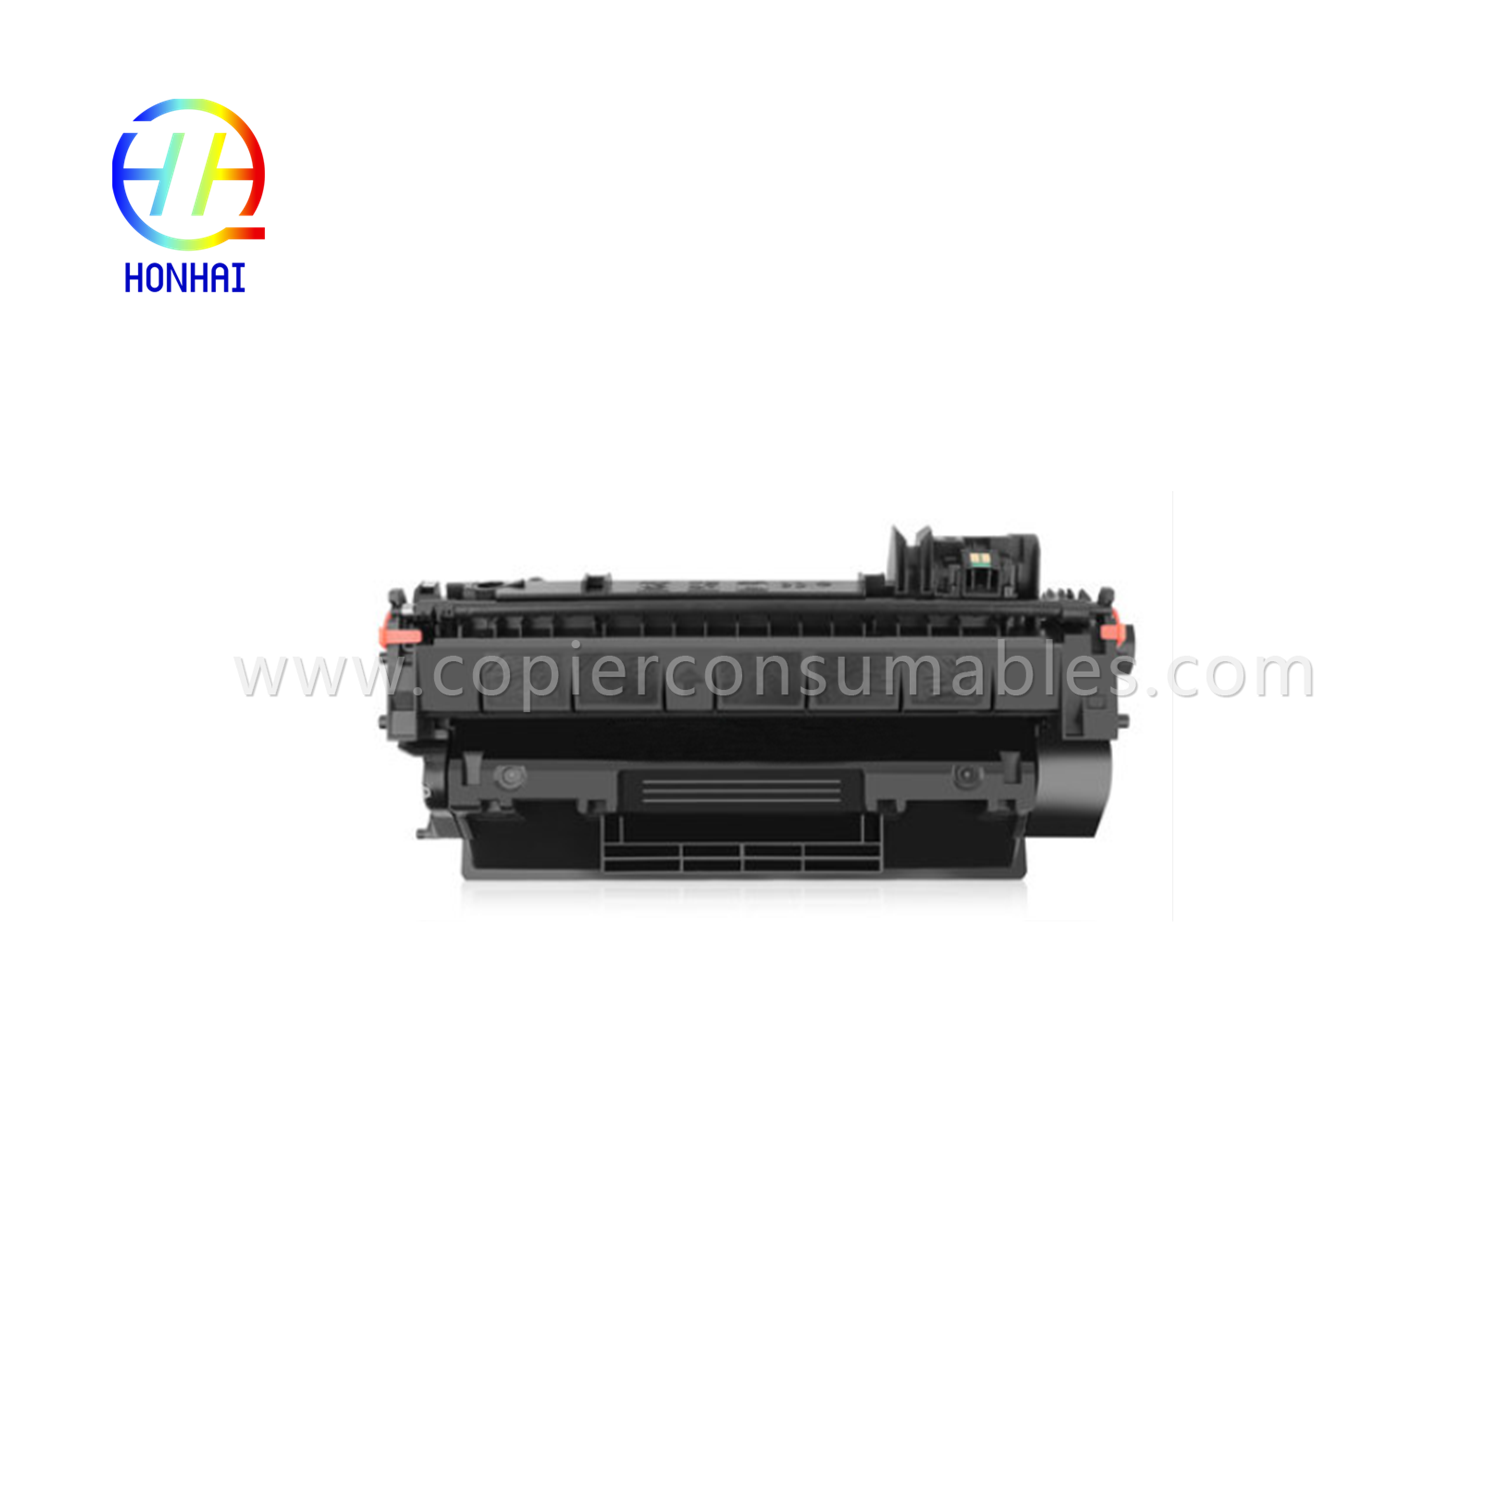 https://www.copierhonhaitech.com/toner-cartridge-voor-hp-p2035-hp05a-product/